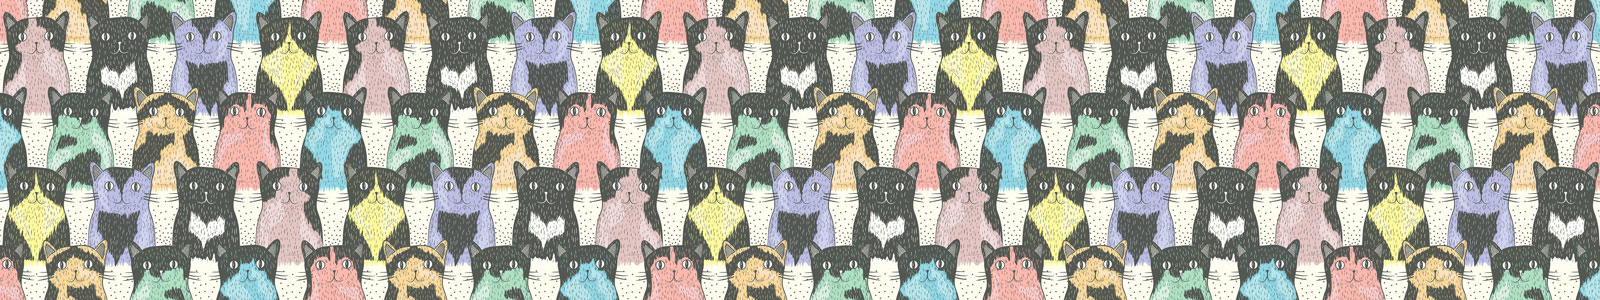 №6266 - Векторные рисунки котов в винтажном стиле